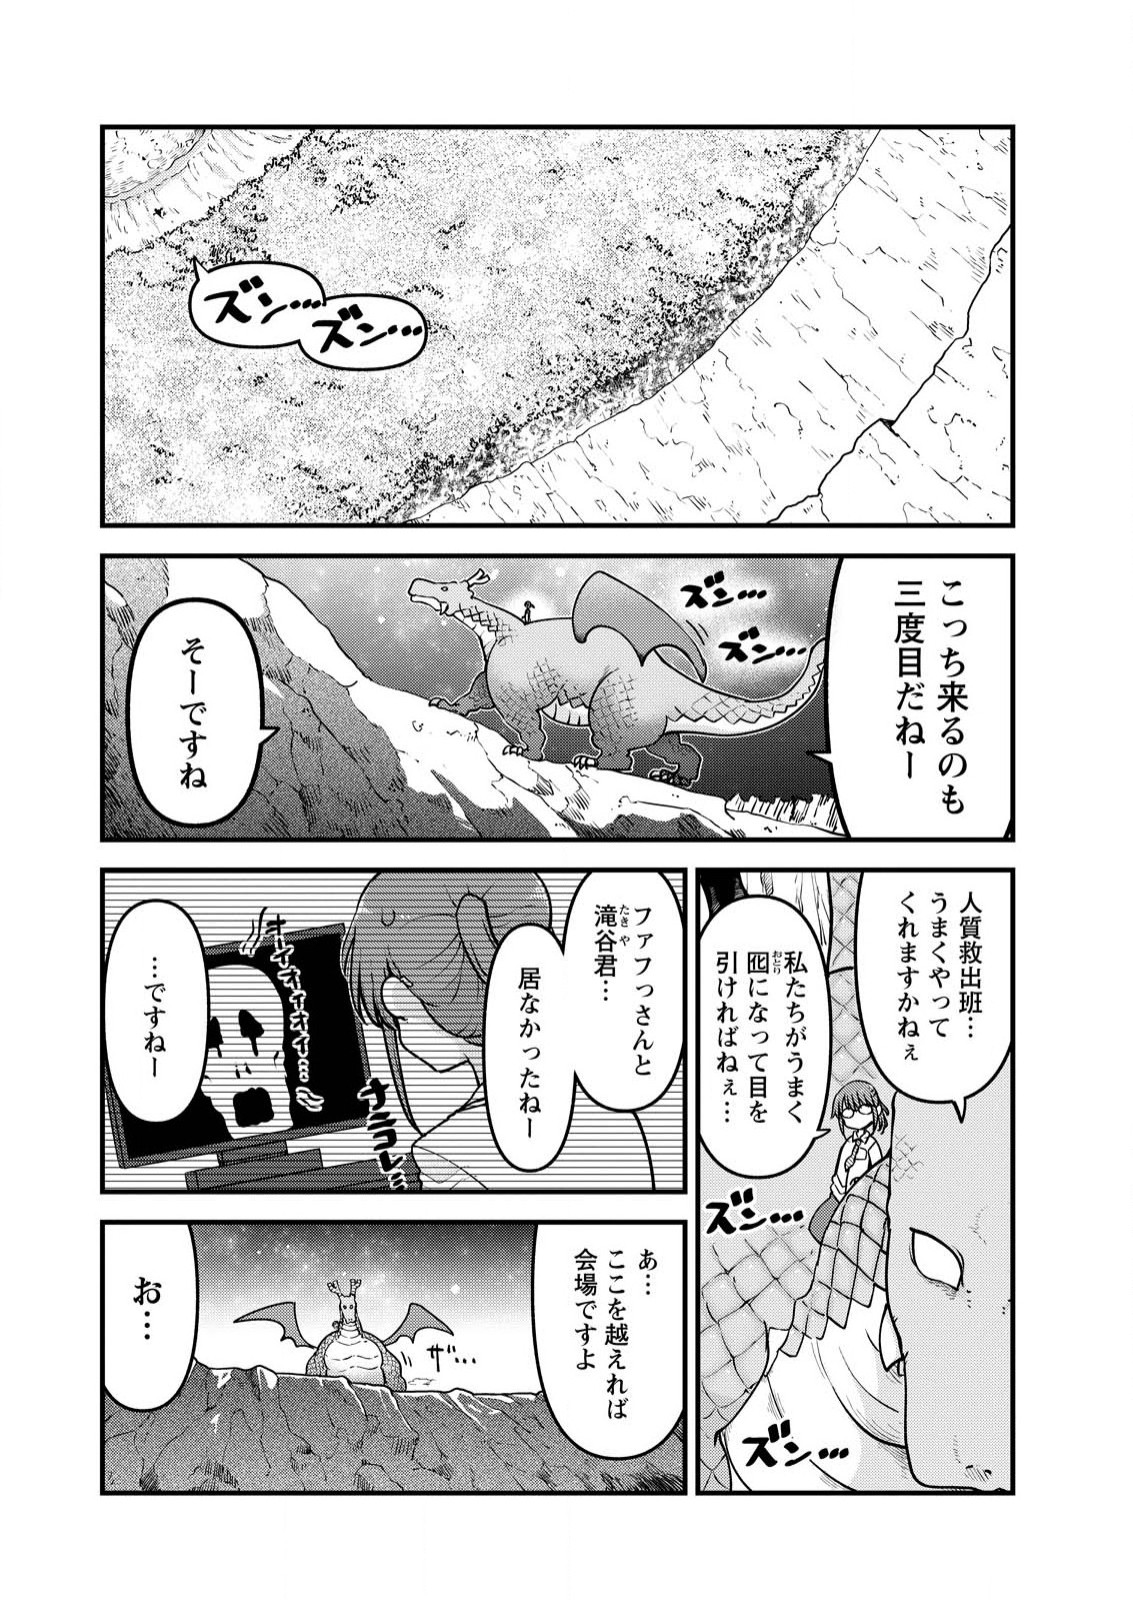 Kobayashi-san Chi no Maid Dragon - Chapter 142 - Page 1